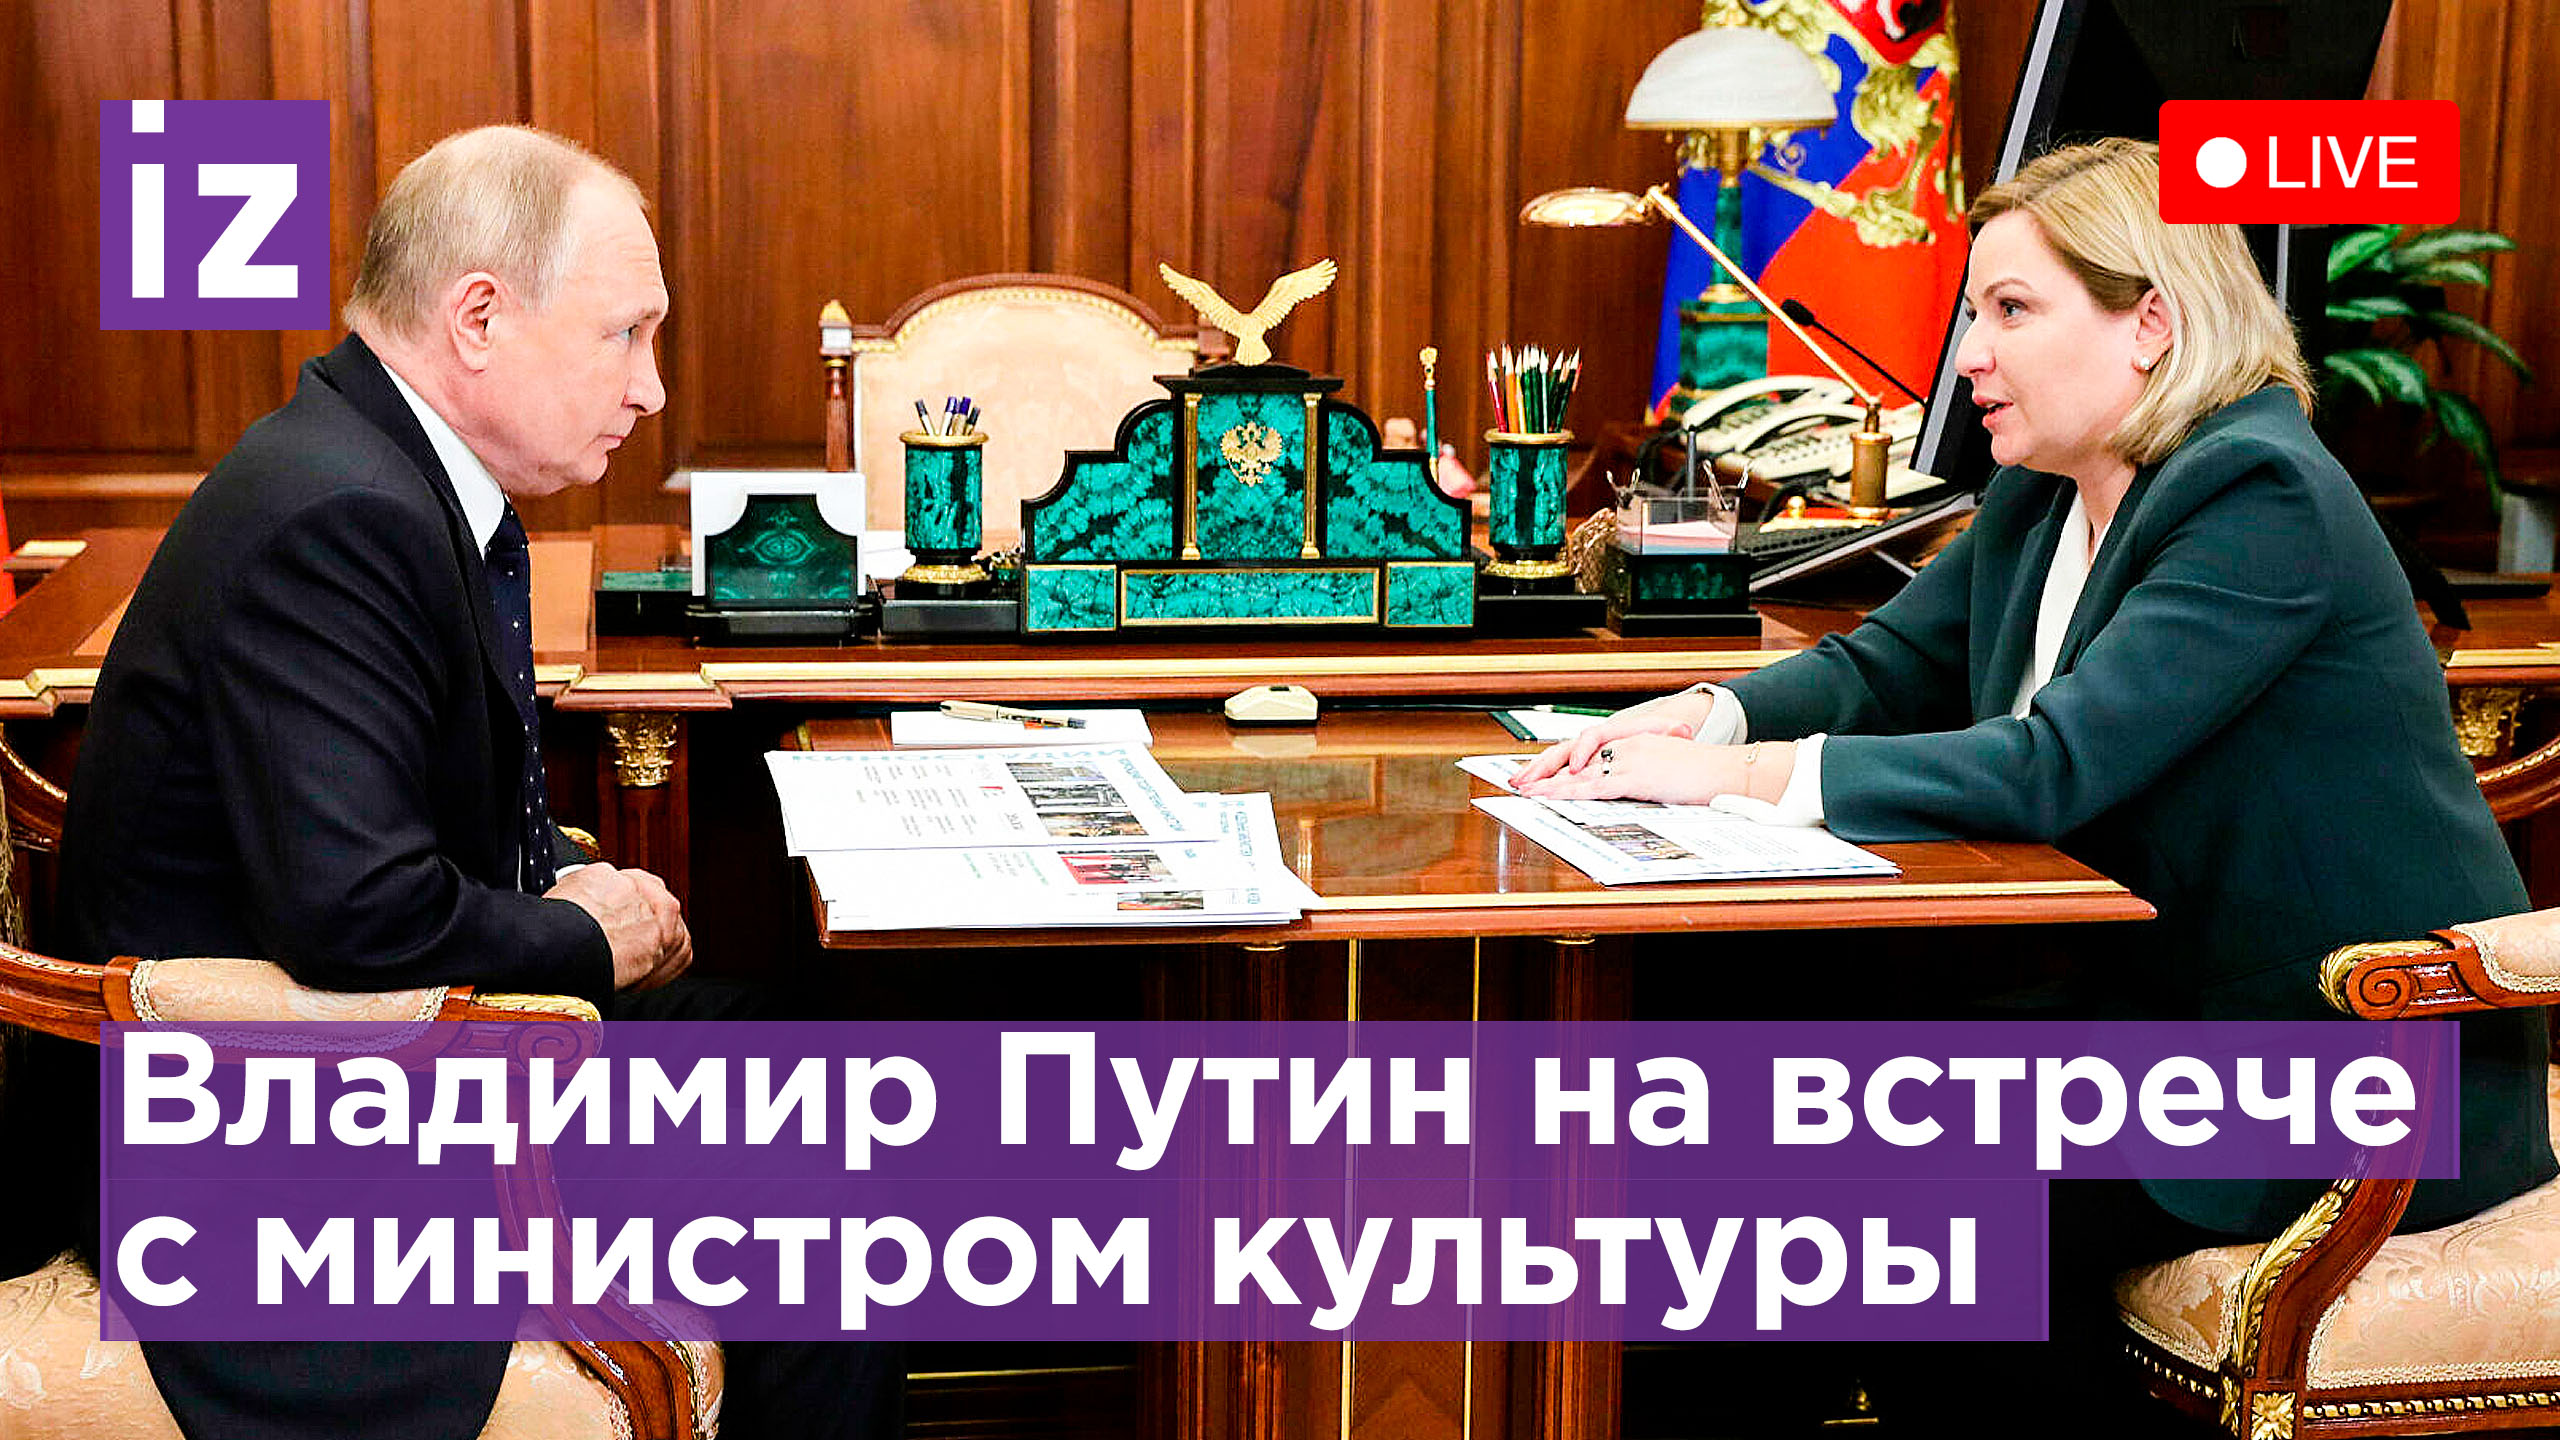 Рабочая встреча Владимира Путина с министром культуры России. Прямая трансляция